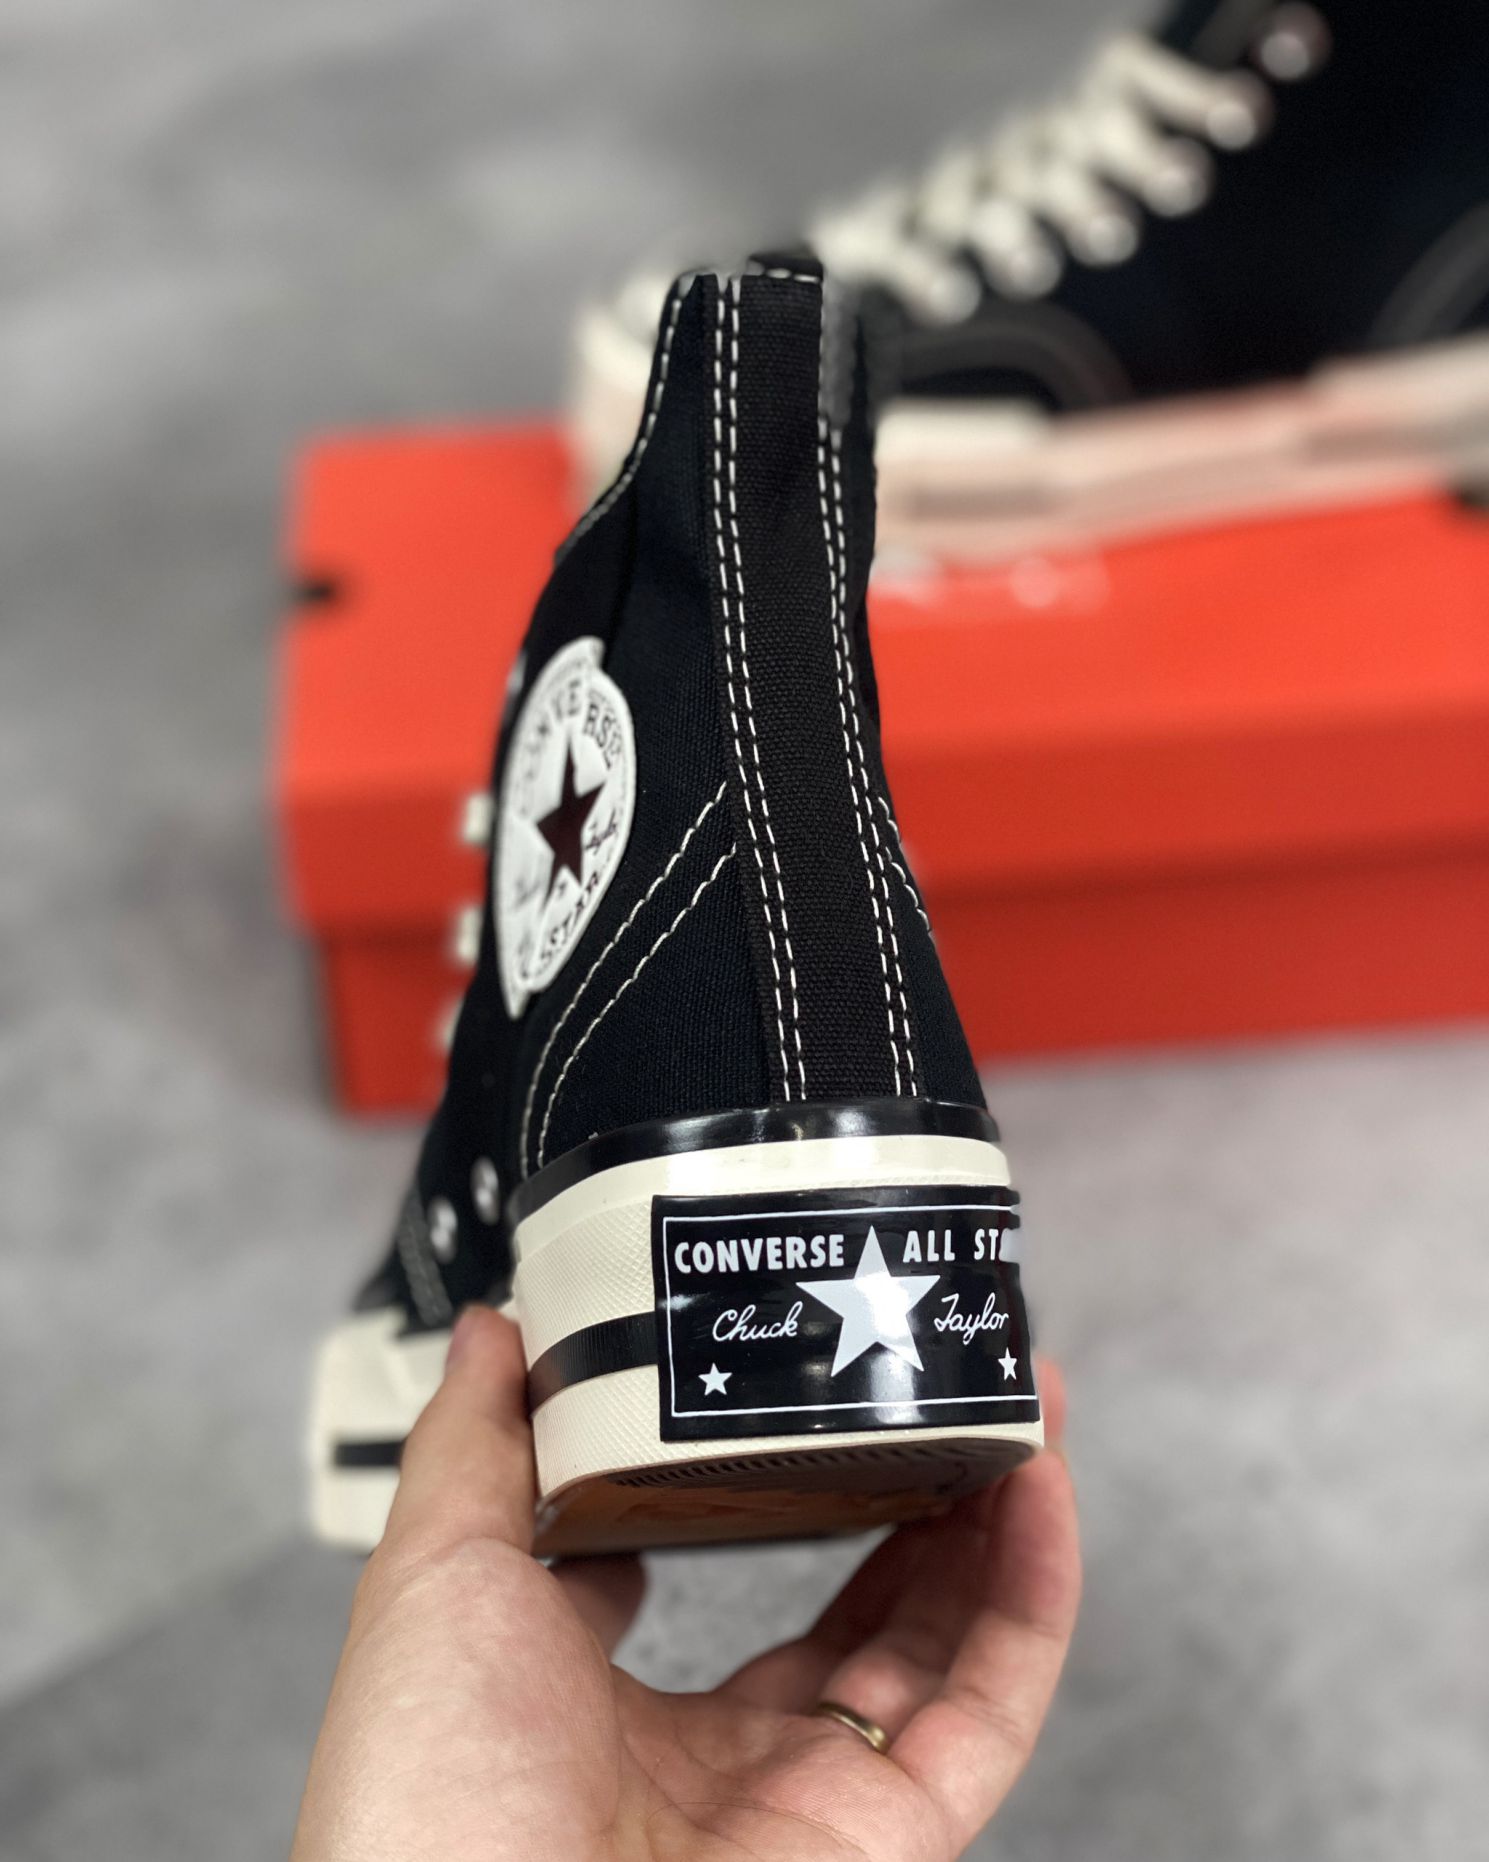 Giày Converse Chuck Taylor 70 Plus Black Đen Rep 1:1 - Shop giày Replica™